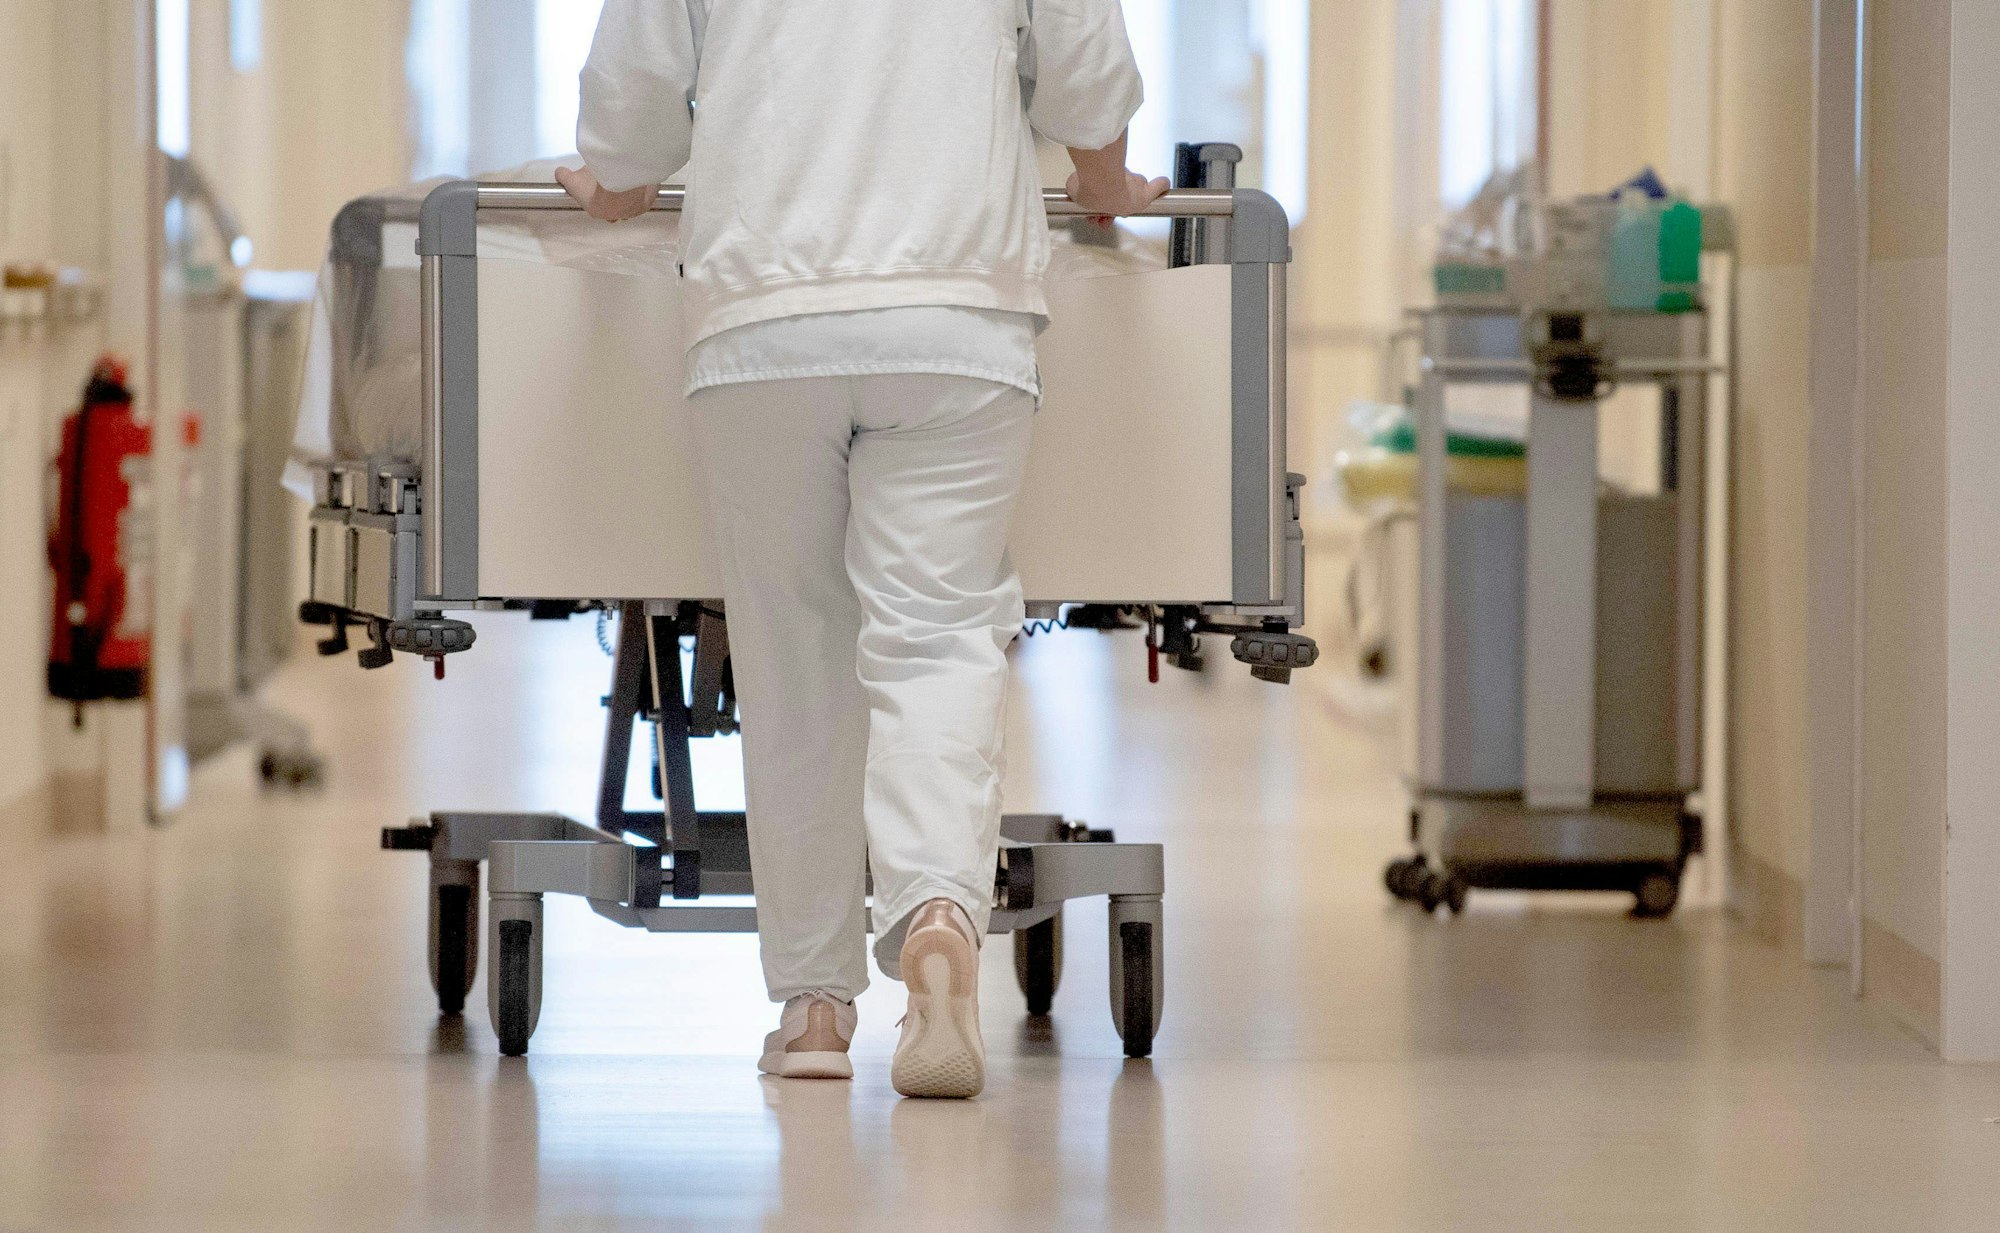 ARCHIV - 20.01.2020, Baden-Württemberg, ---: Eine Krankenpflegerin schiebt ein Krankenbett durch einen Flur.